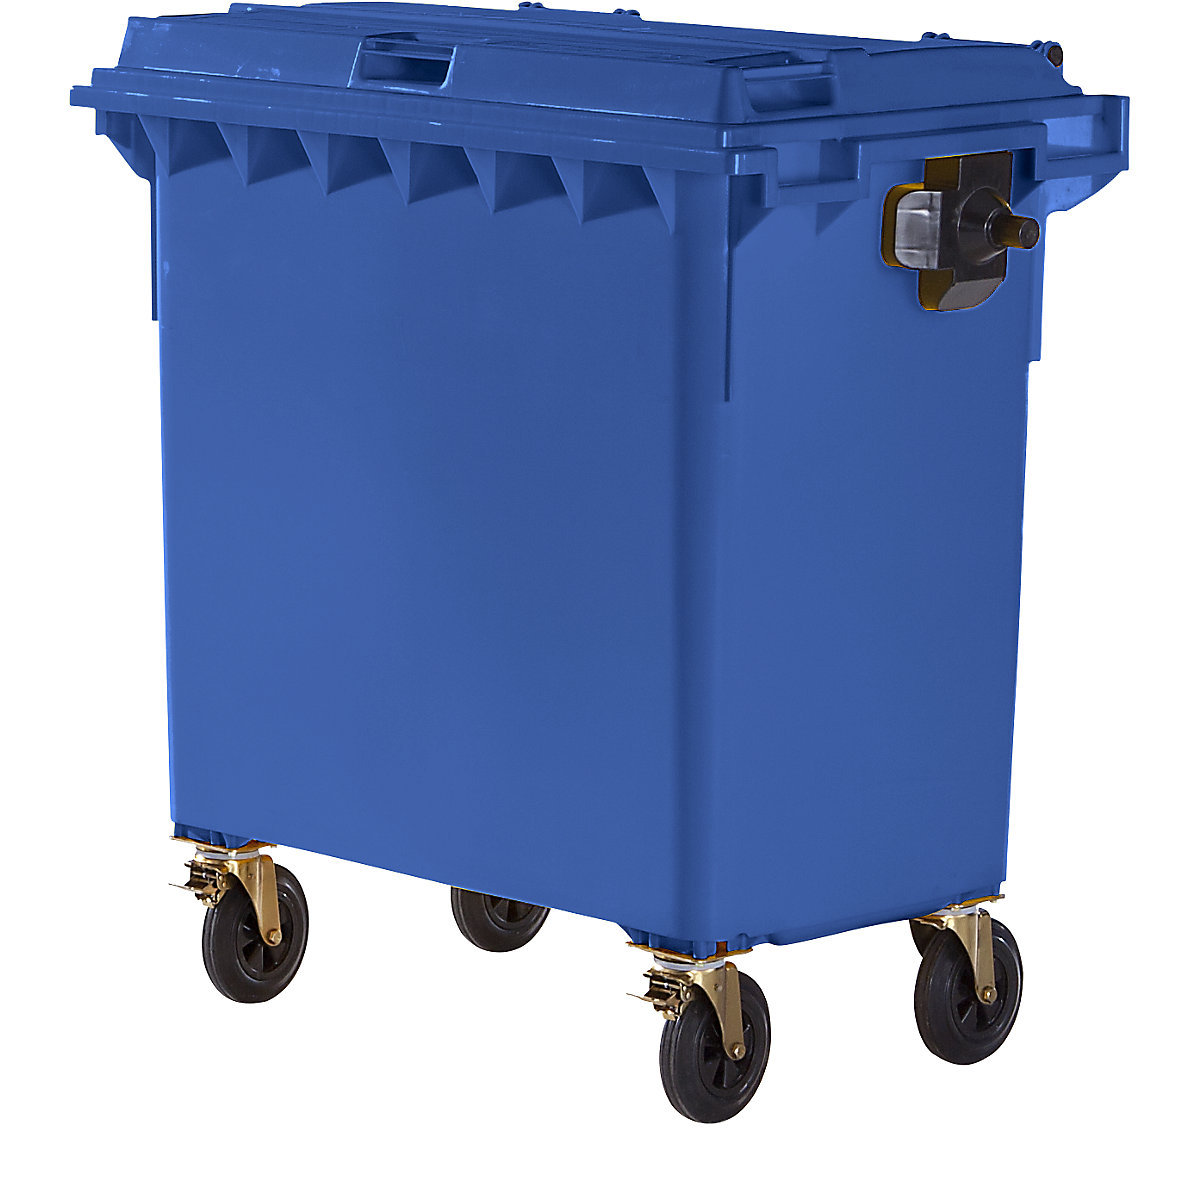 Conteneur à ordures en plastique conforme DIN EN 840, capacité 770 l, l x h x p 1360 x 1330 x 770 mm, bleu